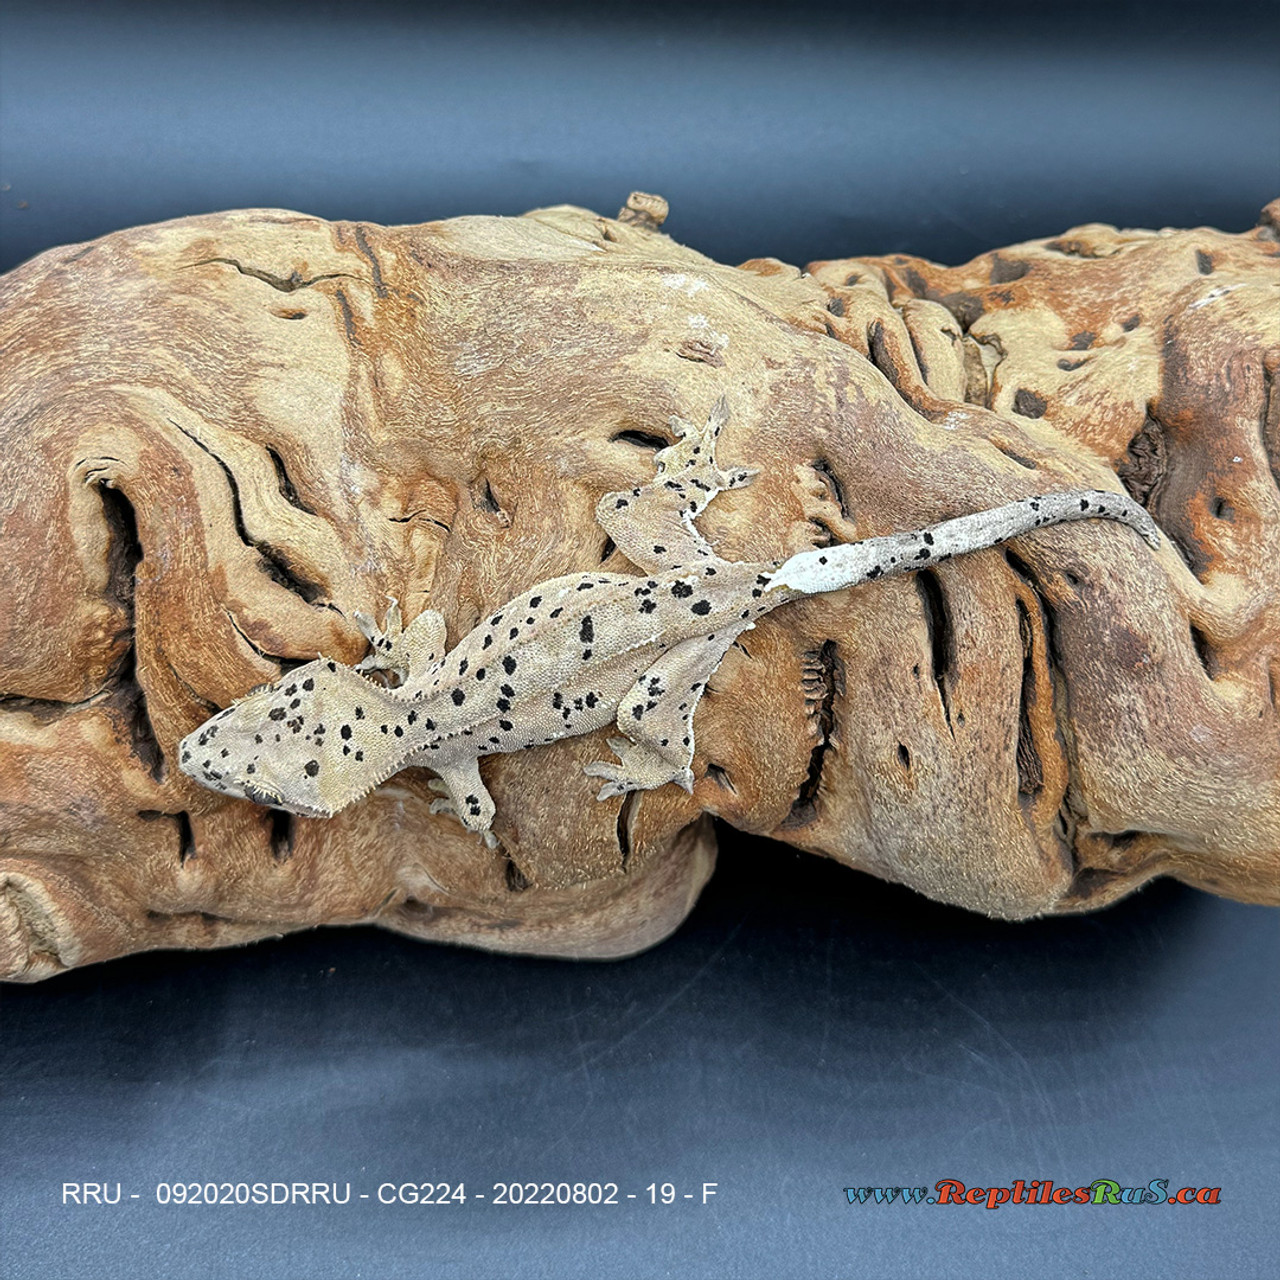 Crested Gecko Dalmatian (19g Female) CG224